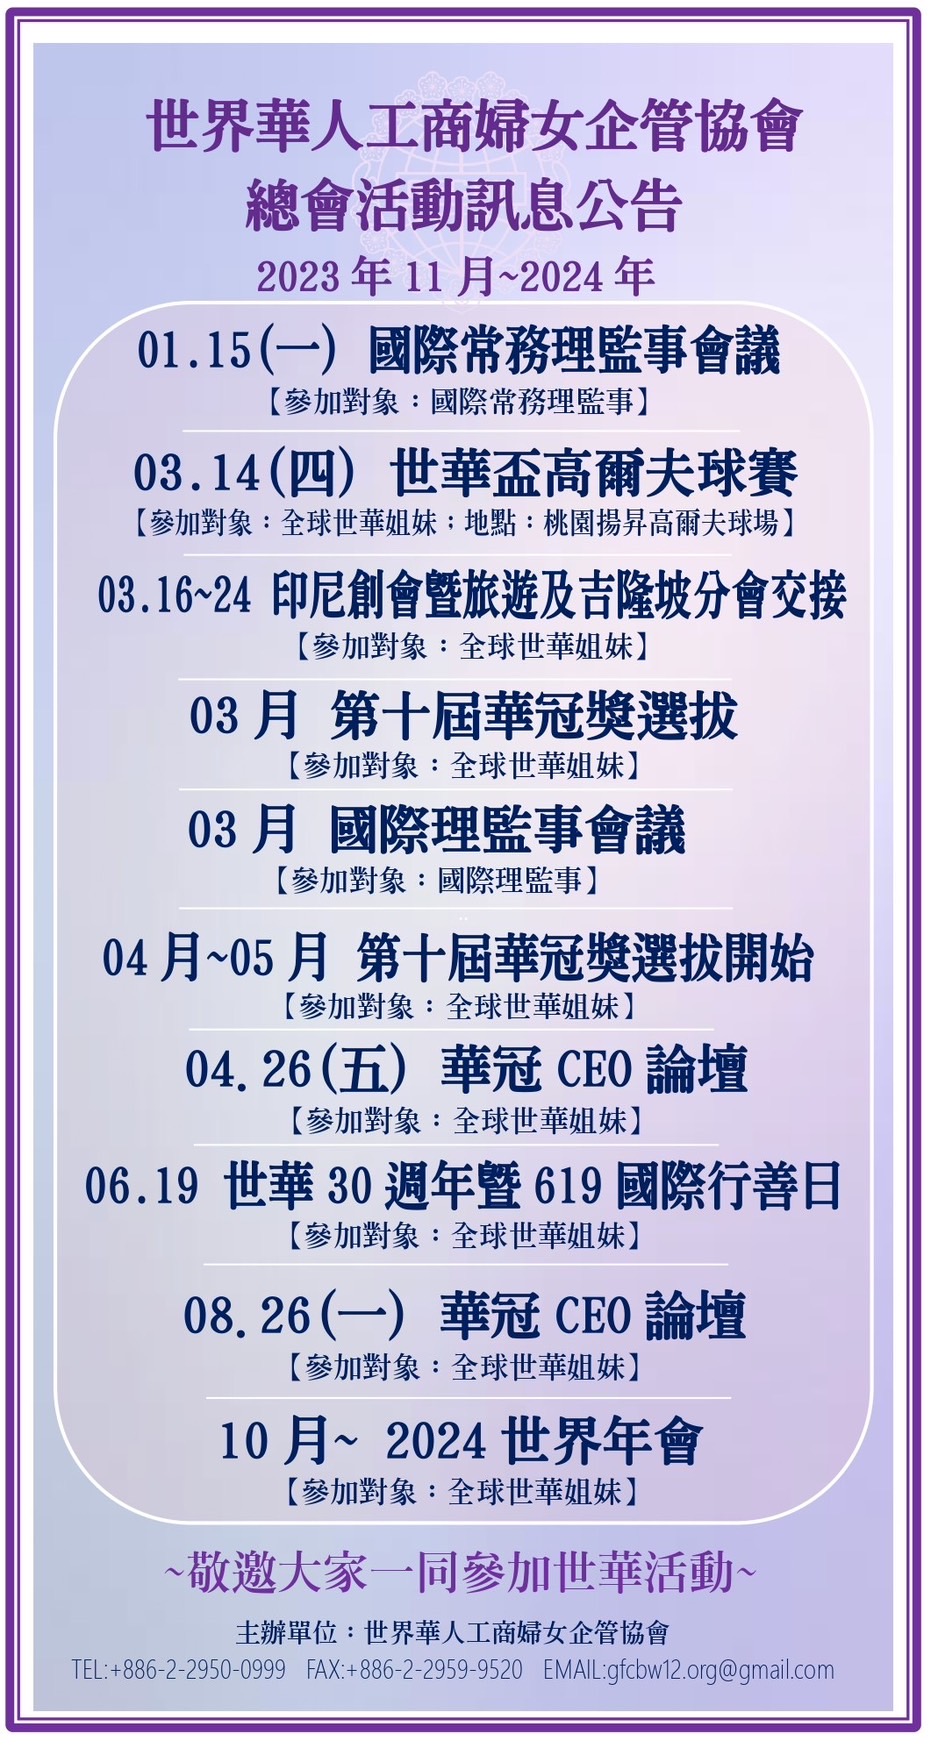 世界華人工商婦女企管協會總會活動訊息公告(2023.11)